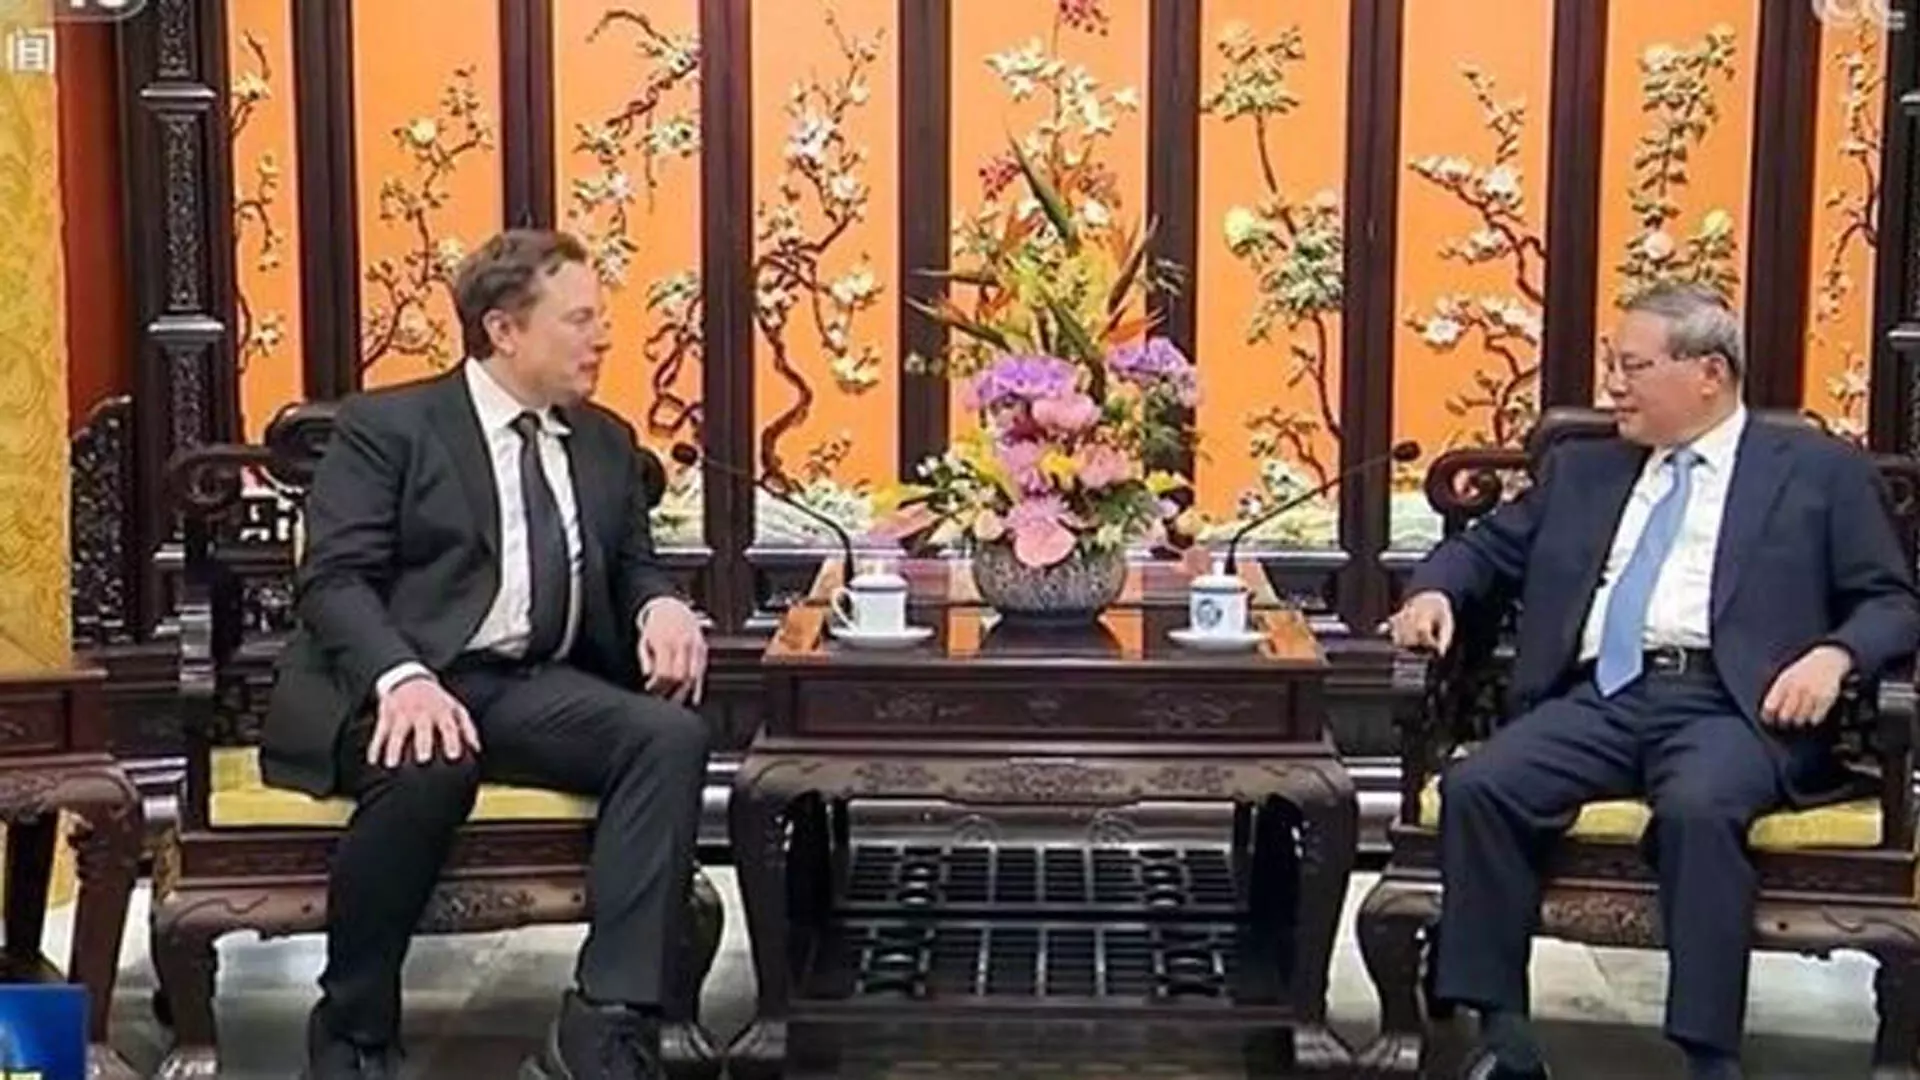 भारत दौरे पर न आने के बाद एलन मस्क ने चीनी प्रधानमंत्री ली कियांग से की मुलाकात